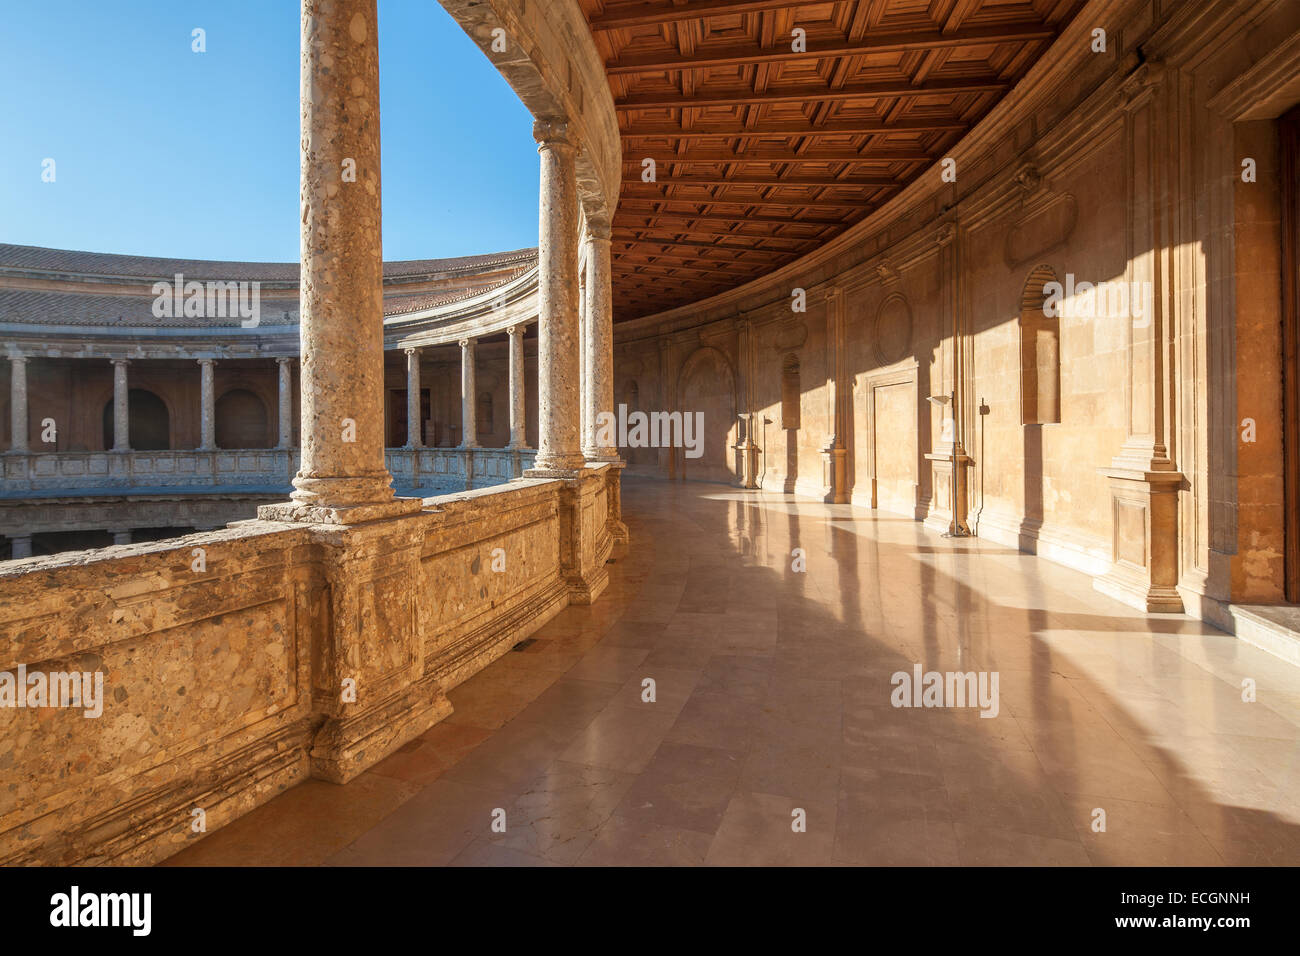 Renaissance-Palast von Heiliger römischer Kaiser Charles V in der Alhambra Granada Spanien. Palacio Carlos V. runden Innenhof. Stockfoto